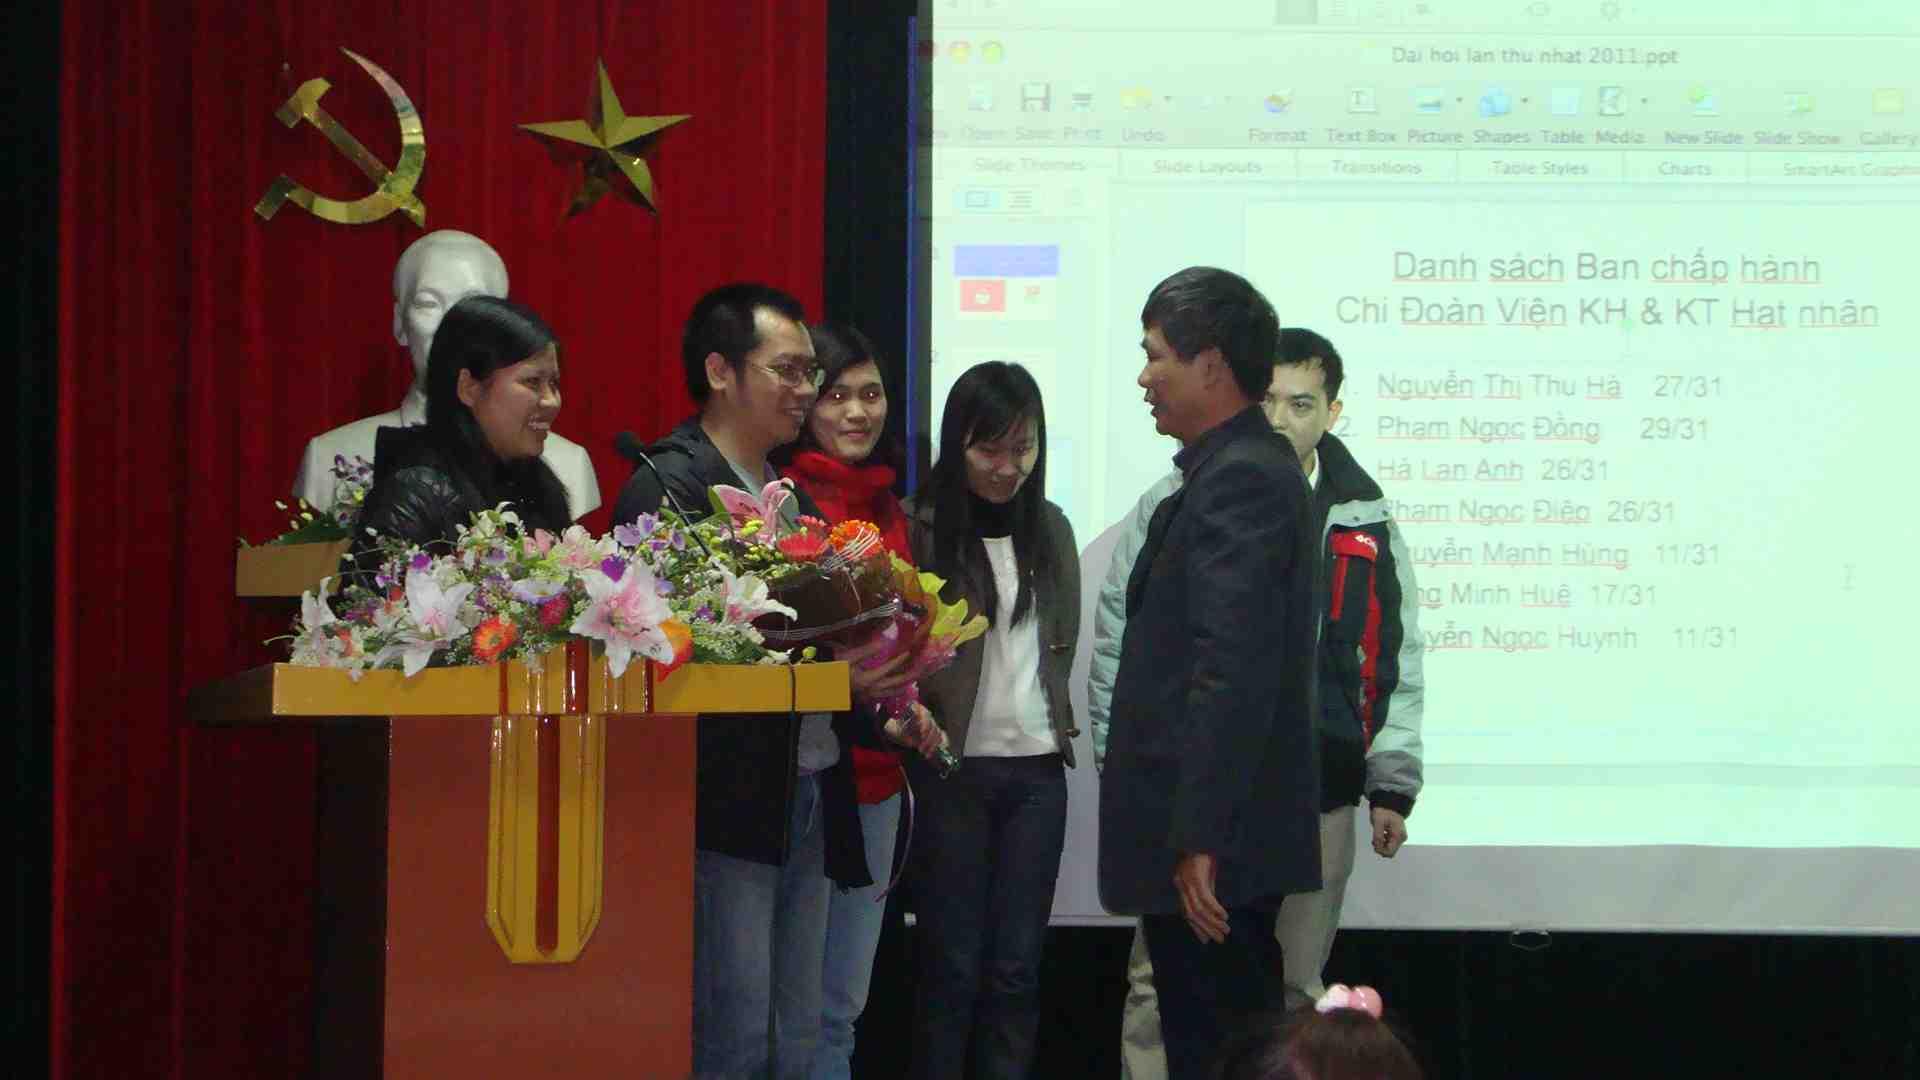 Đại hội Chi đoàn TNCS Hồ Chí Minh Viện KH&KT Hạt nhân lần thứ nhất